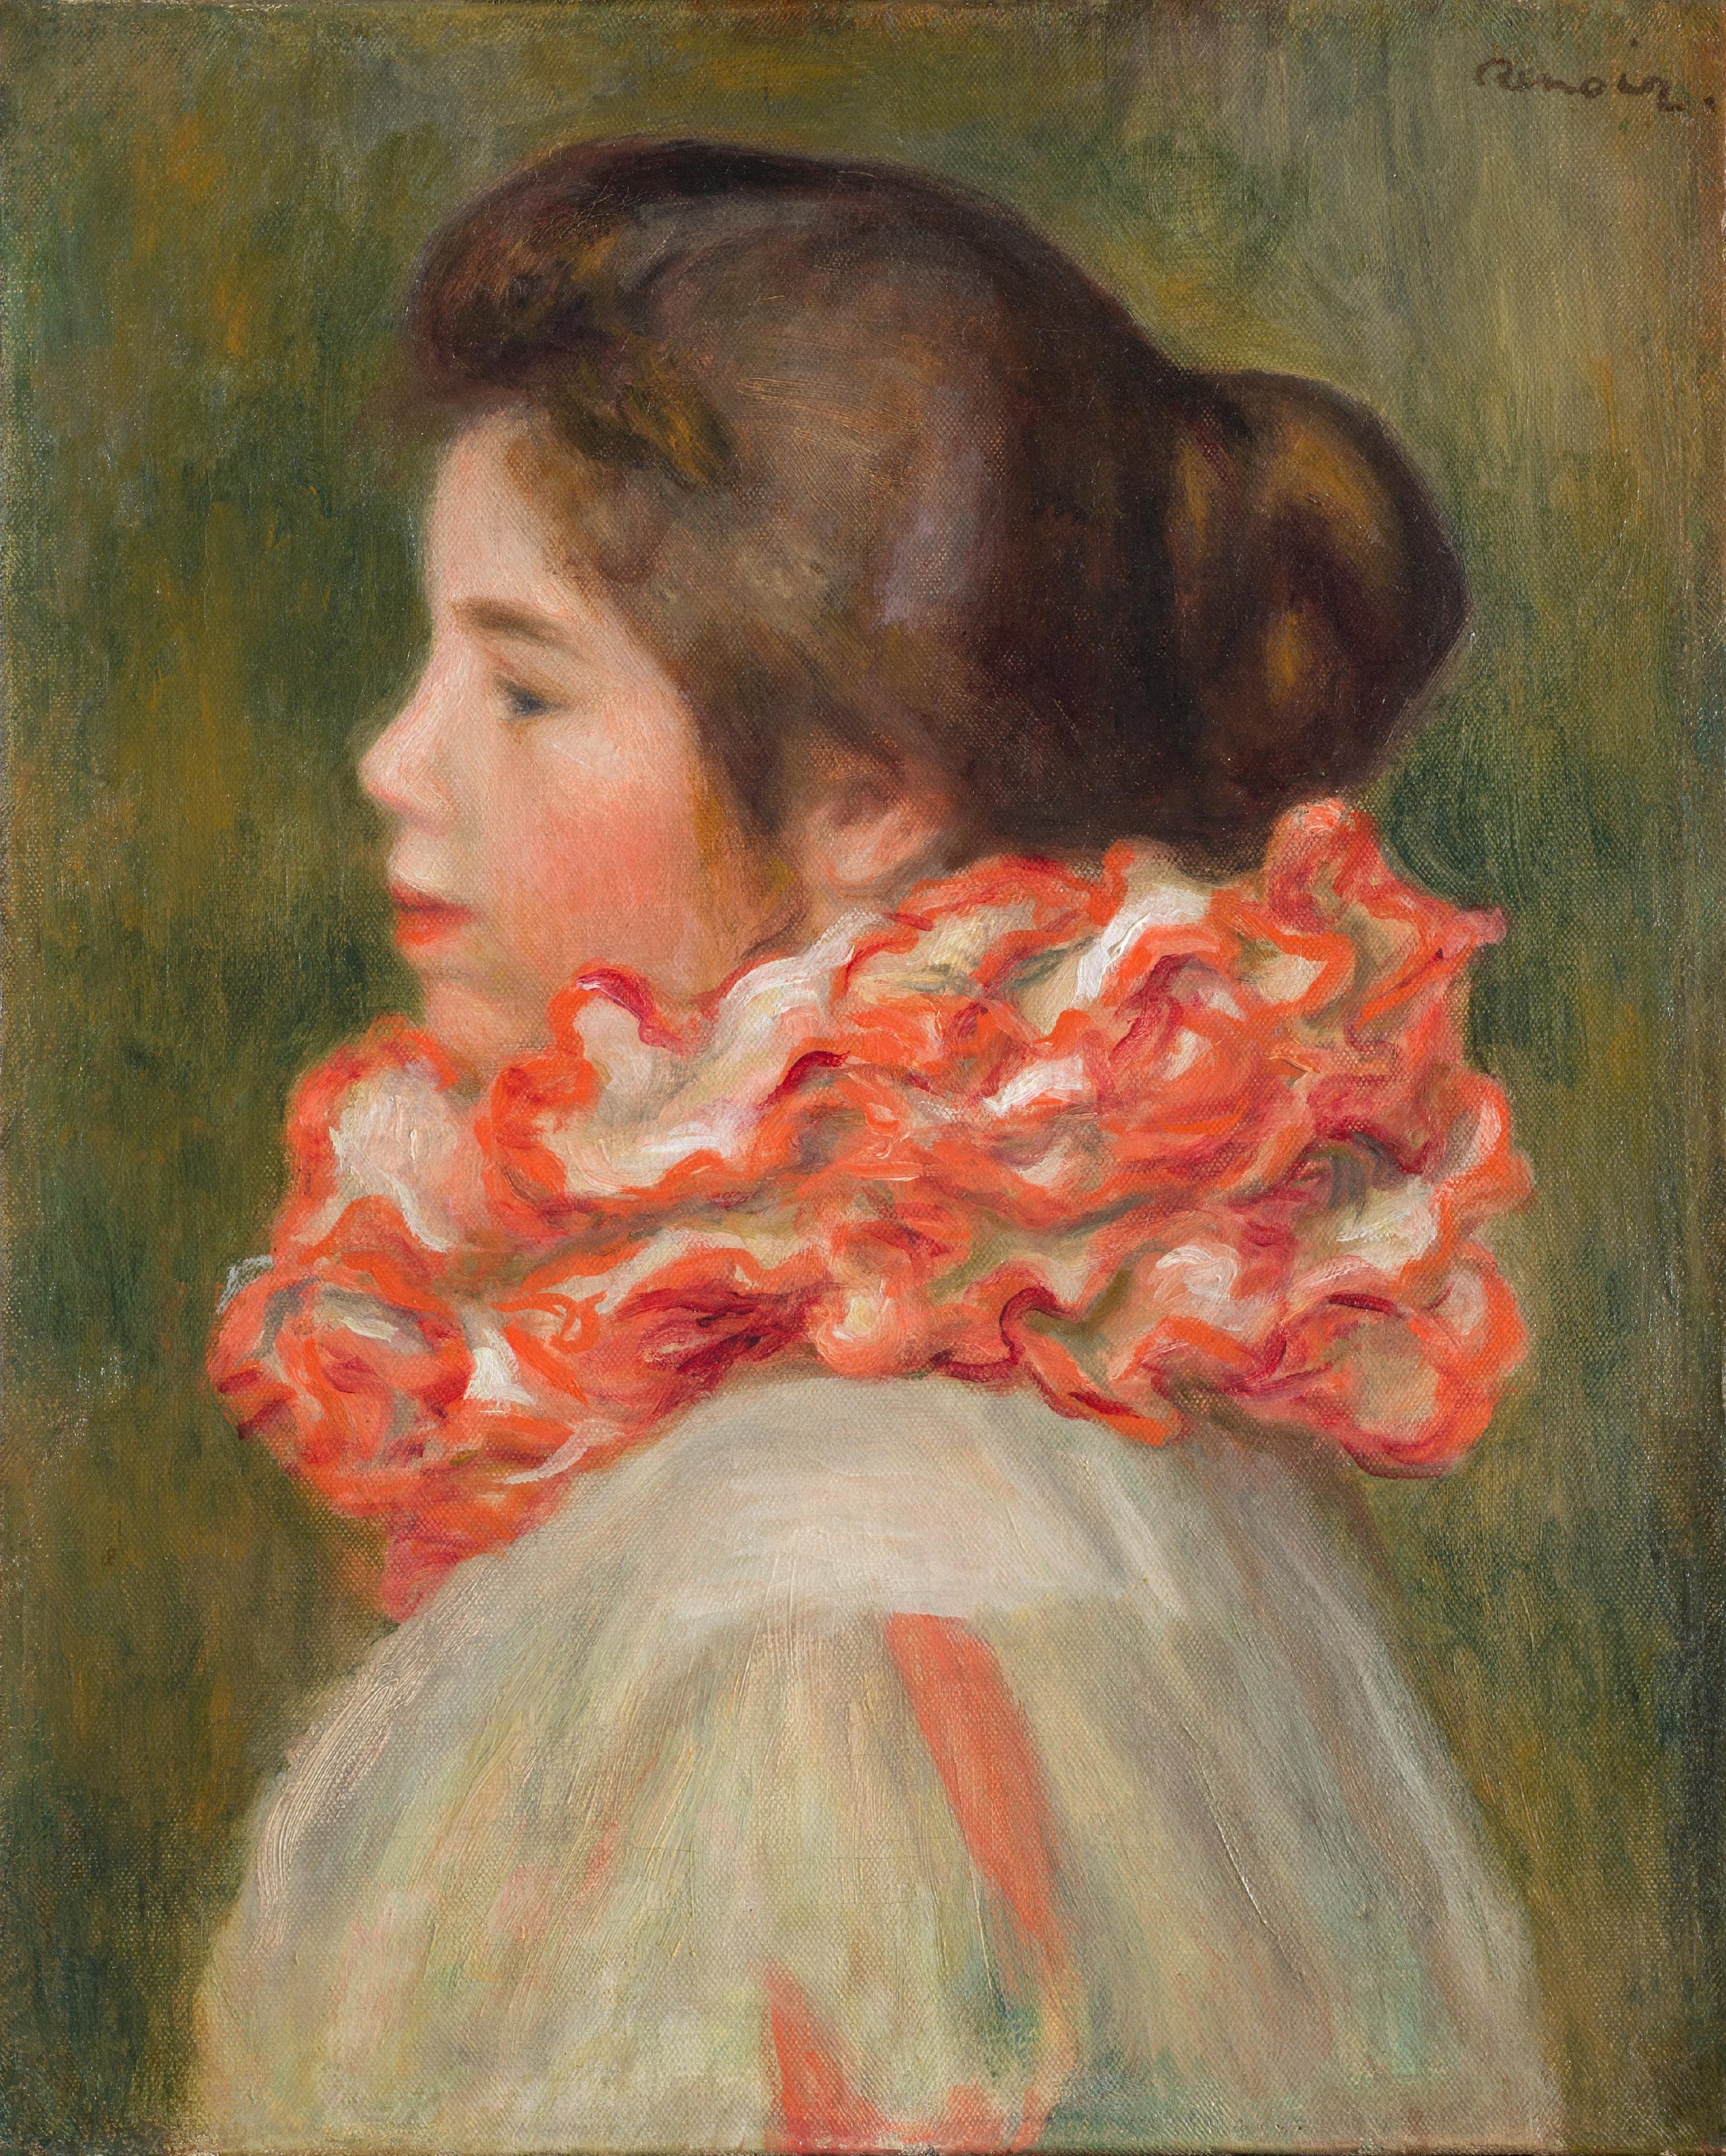 붉은 러프를 한 소녀(Girl in a Red Ruff) by Pierre-Auguste Renoir - 약 1896년 - 41.3 x 33.3 cm 